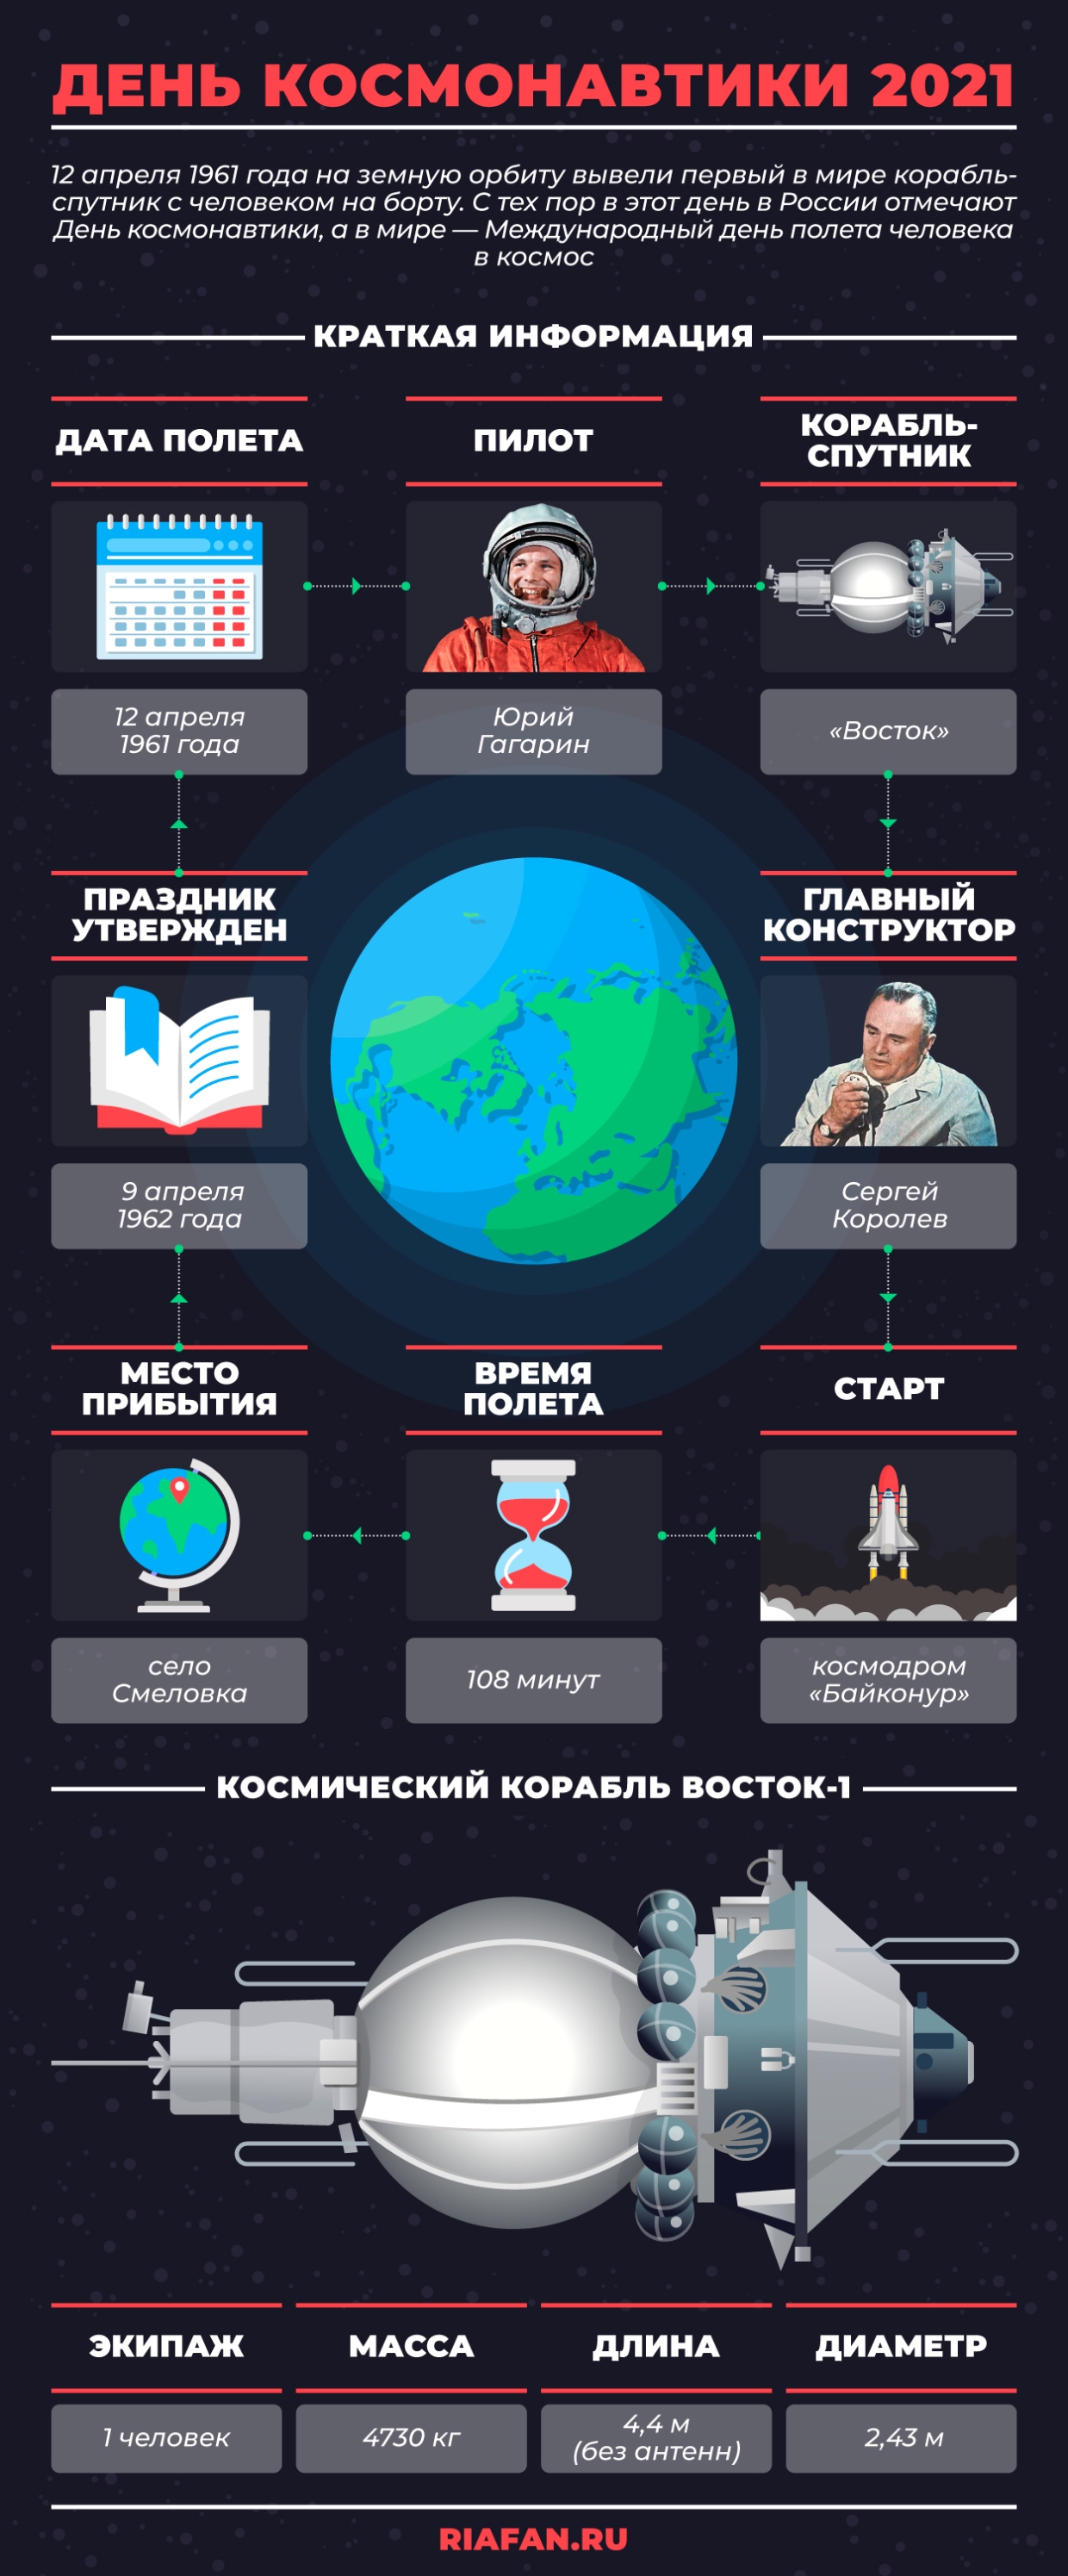 Le mystère de la cicatrice de Youri Gagarine, et pourquoi Sergueï Korolev est-il mort ?